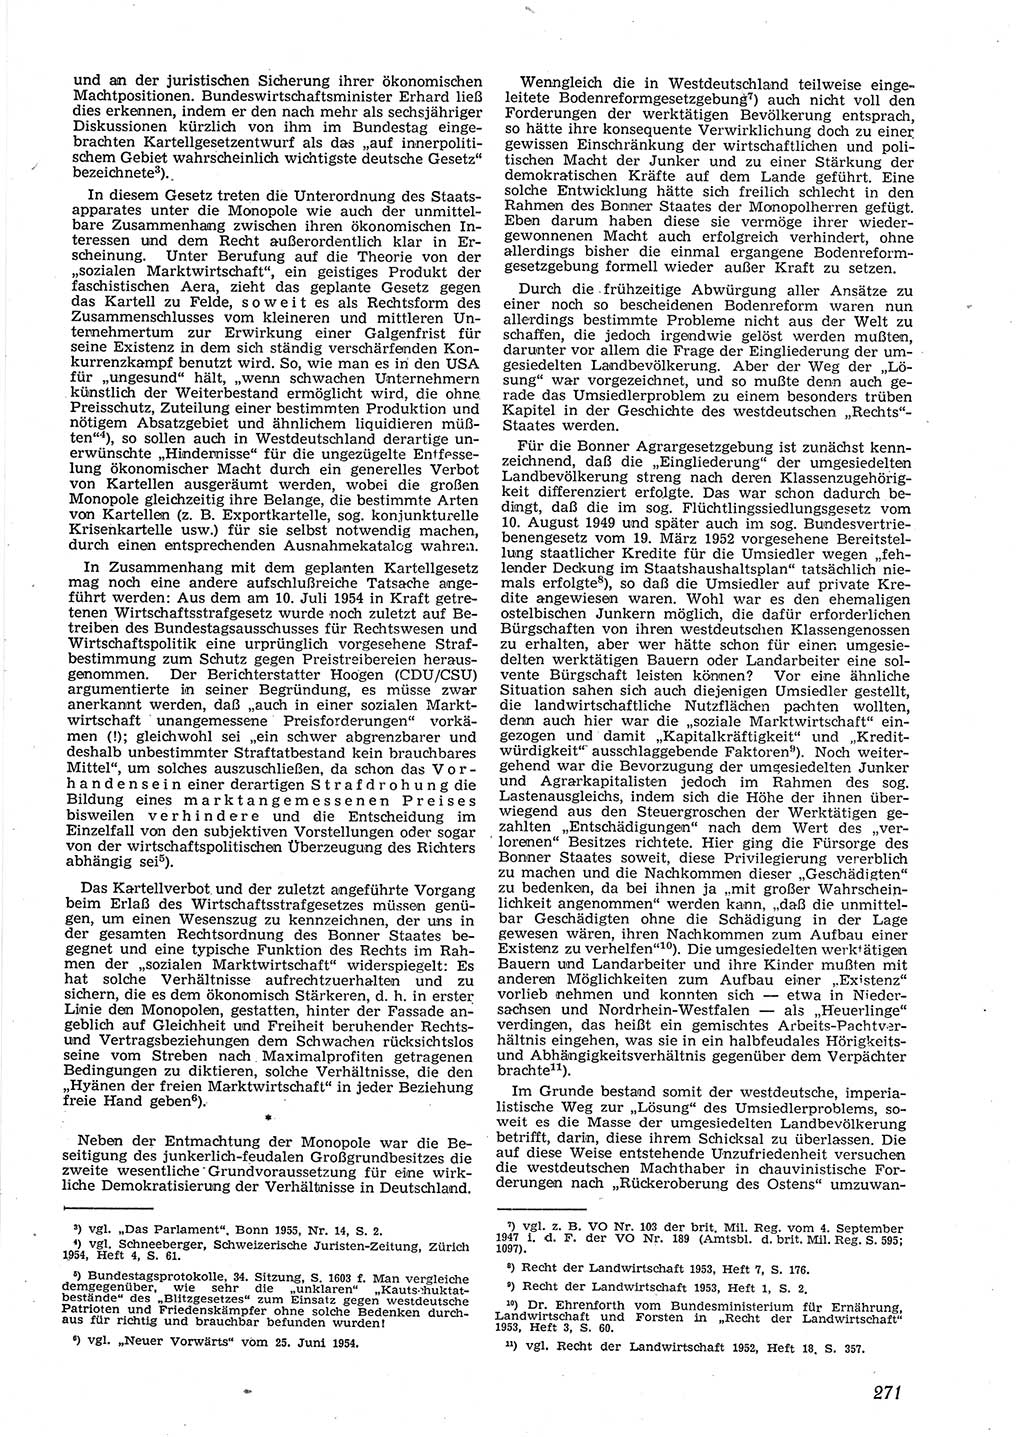 Neue Justiz (NJ), Zeitschrift für Recht und Rechtswissenschaft [Deutsche Demokratische Republik (DDR)], 9. Jahrgang 1955, Seite 271 (NJ DDR 1955, S. 271)